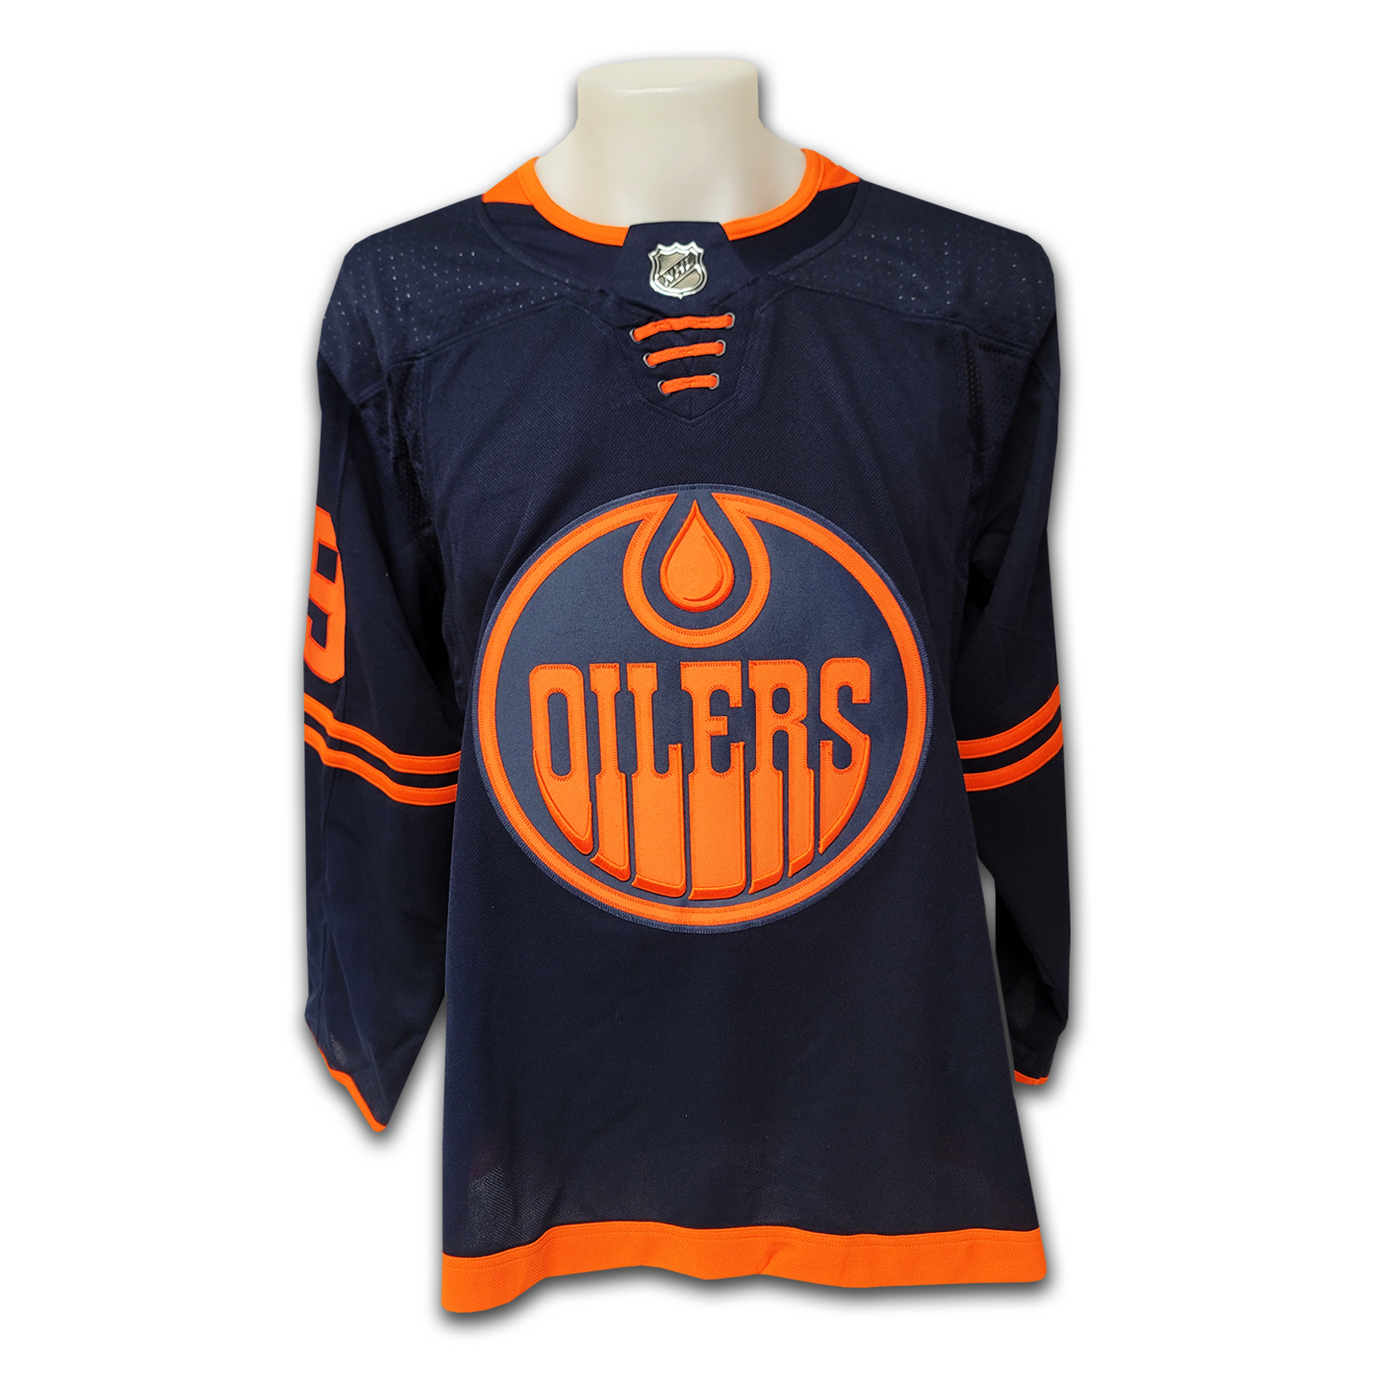 Leon Draisaitl Edmonton Oilers Alternate Adidas Jersey